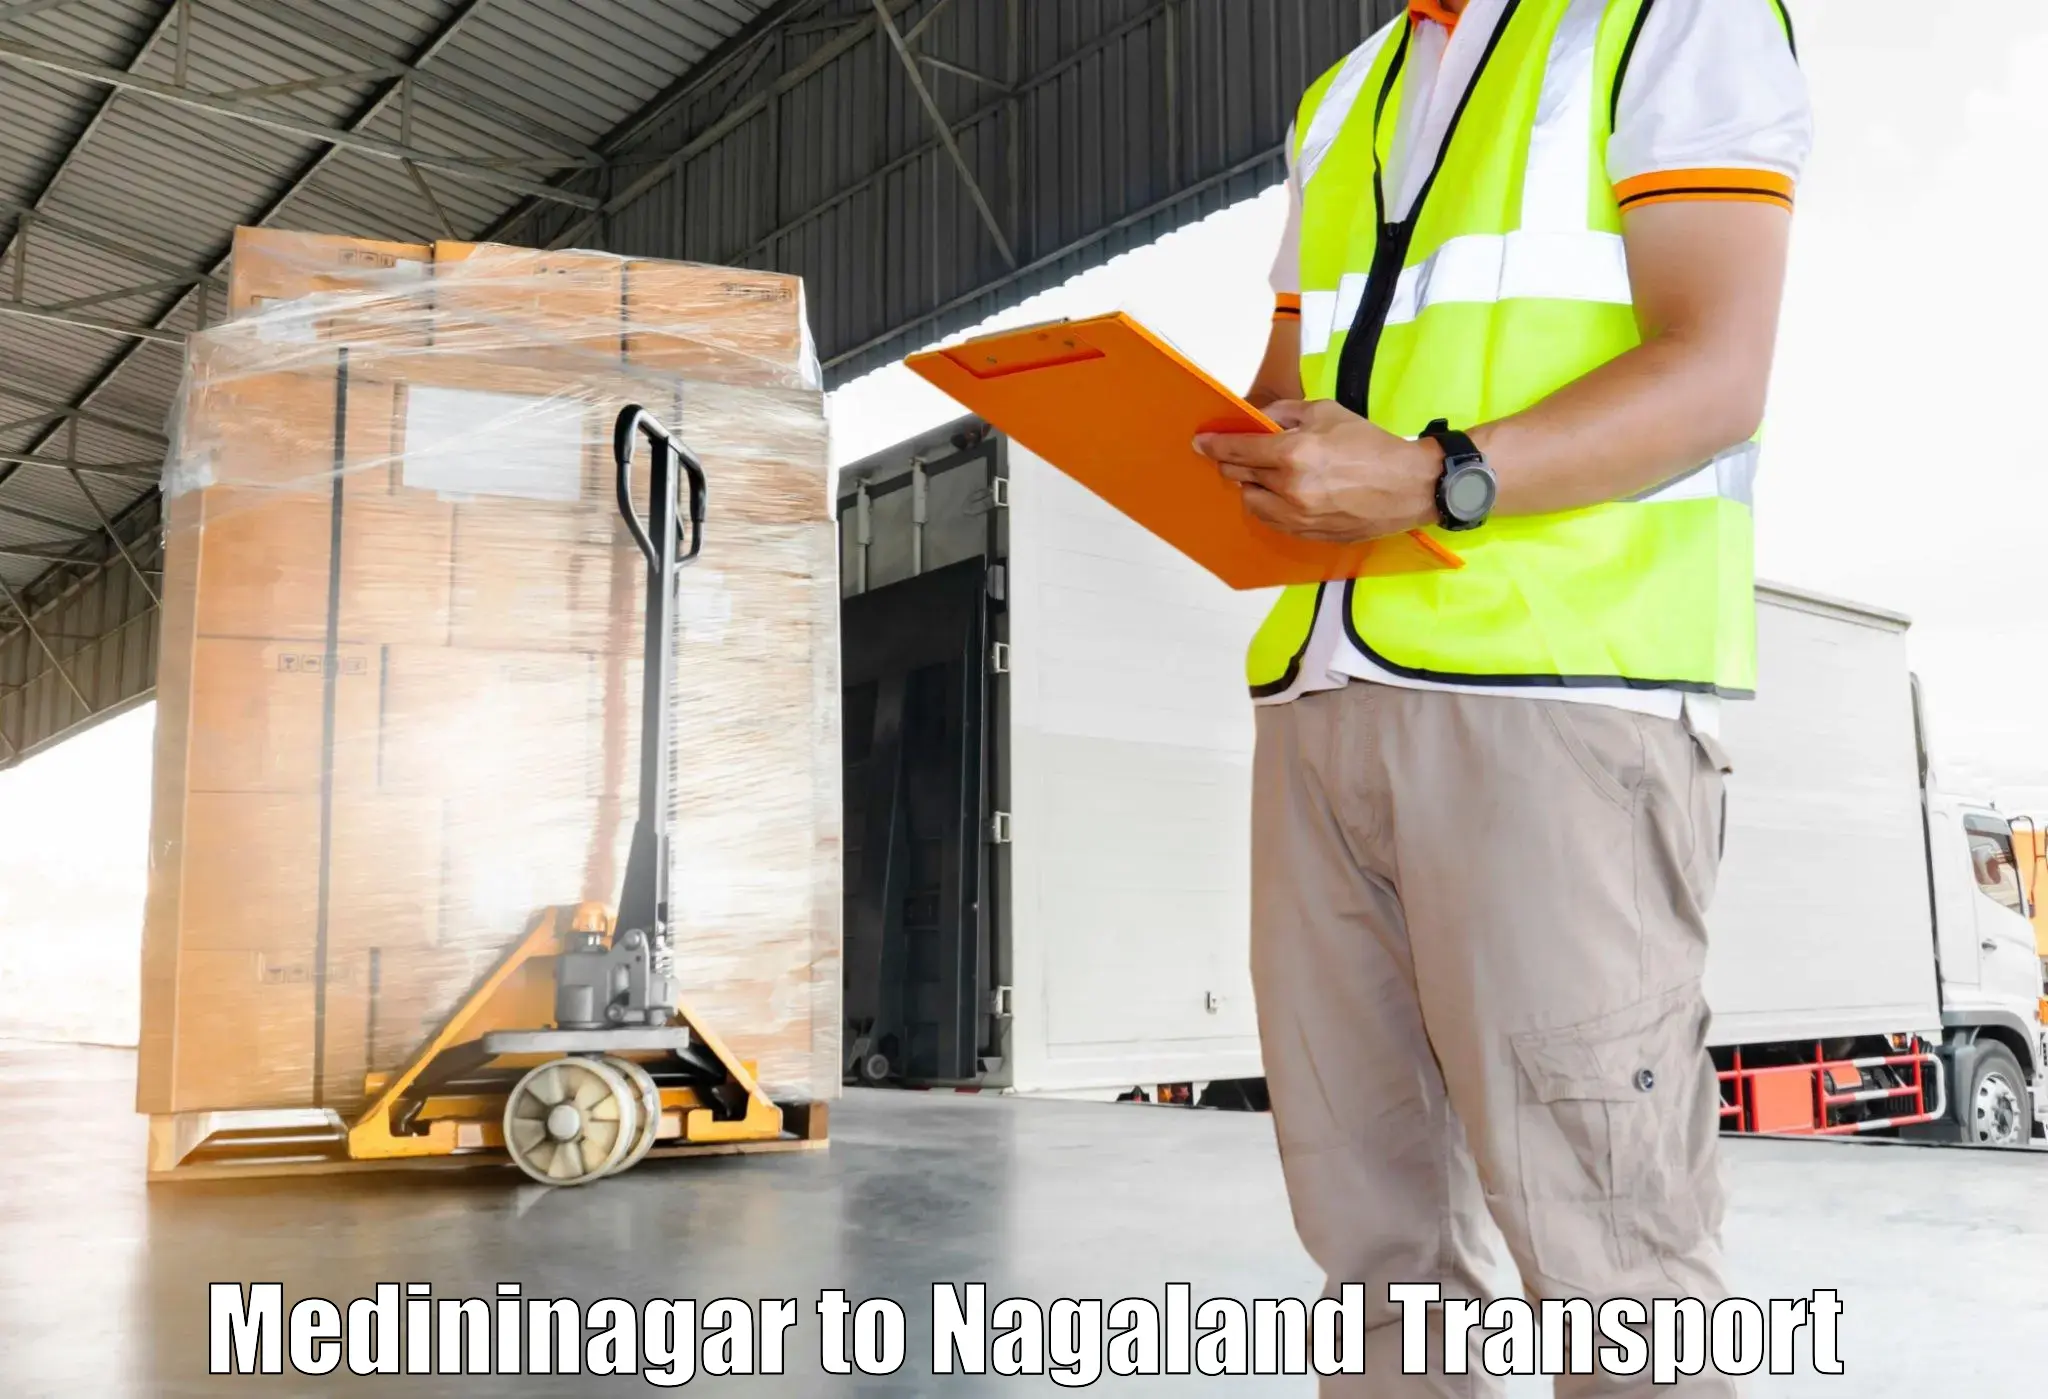 Truck transport companies in India Medininagar to Peren